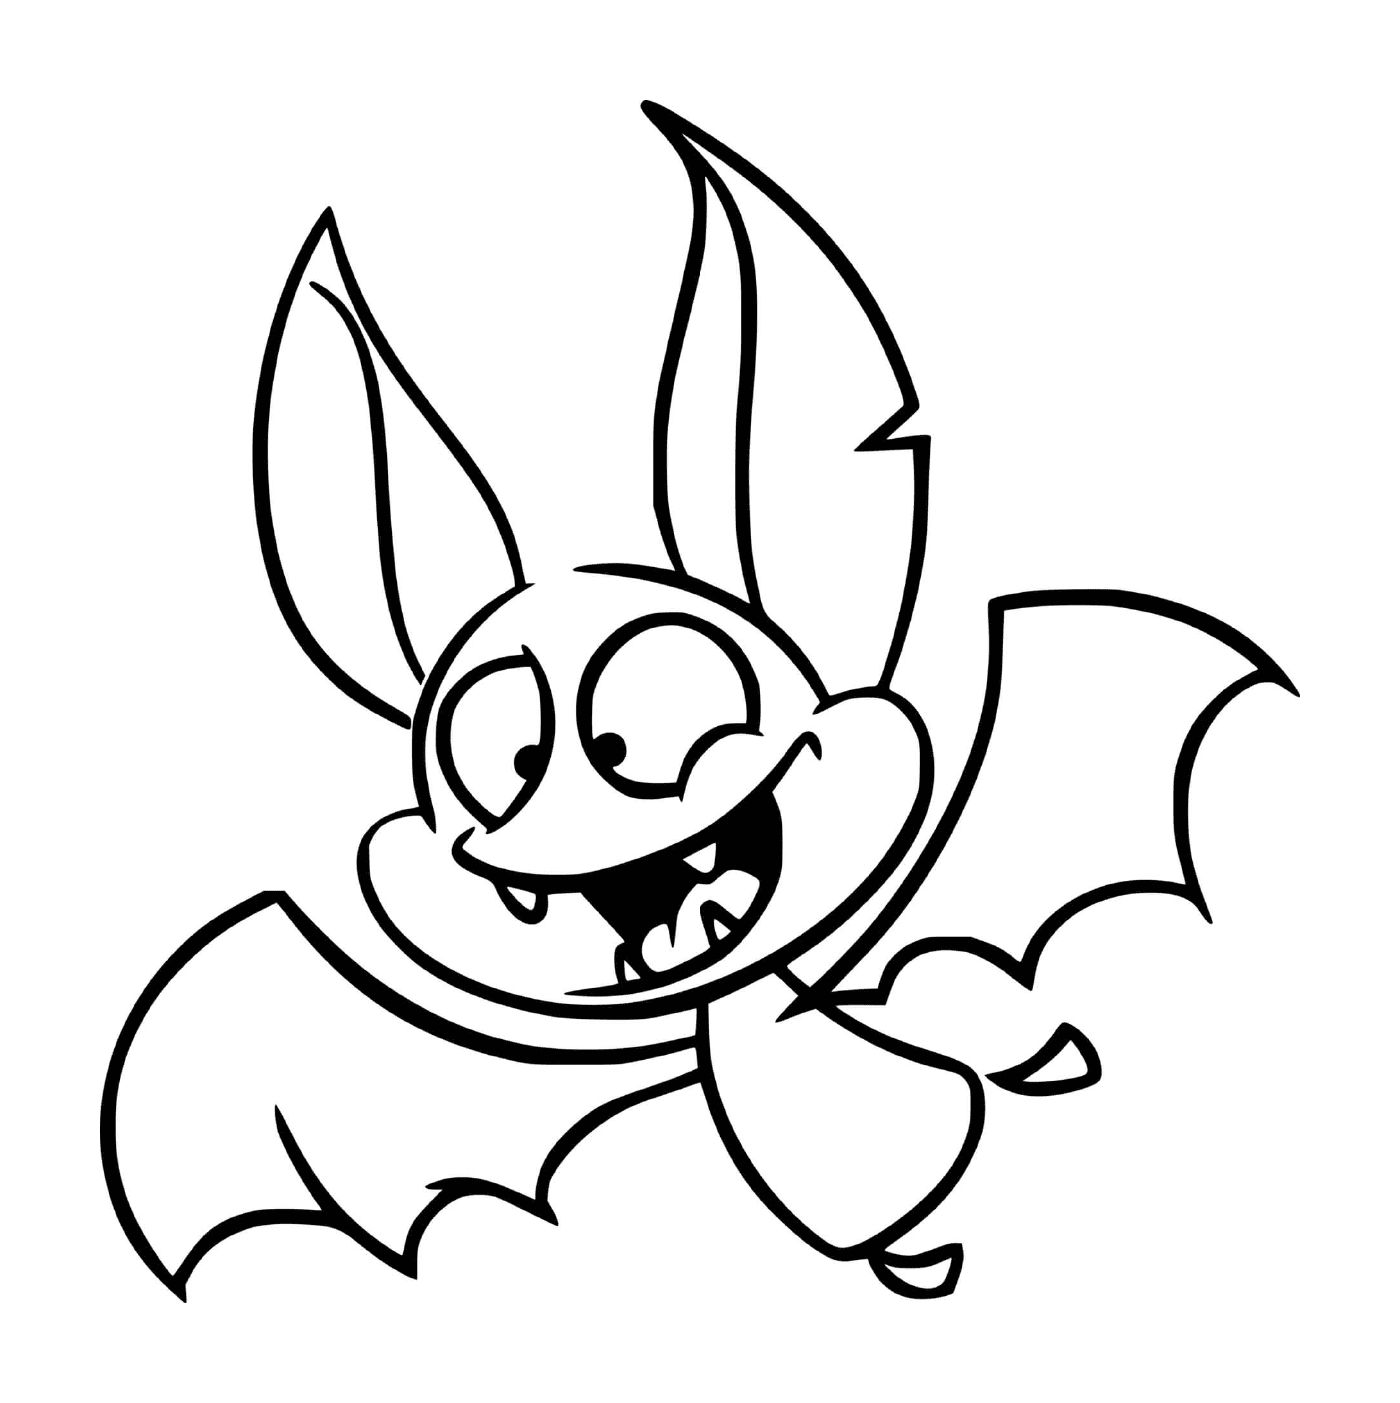  Pipistrello malizioso in versione cartone animato 